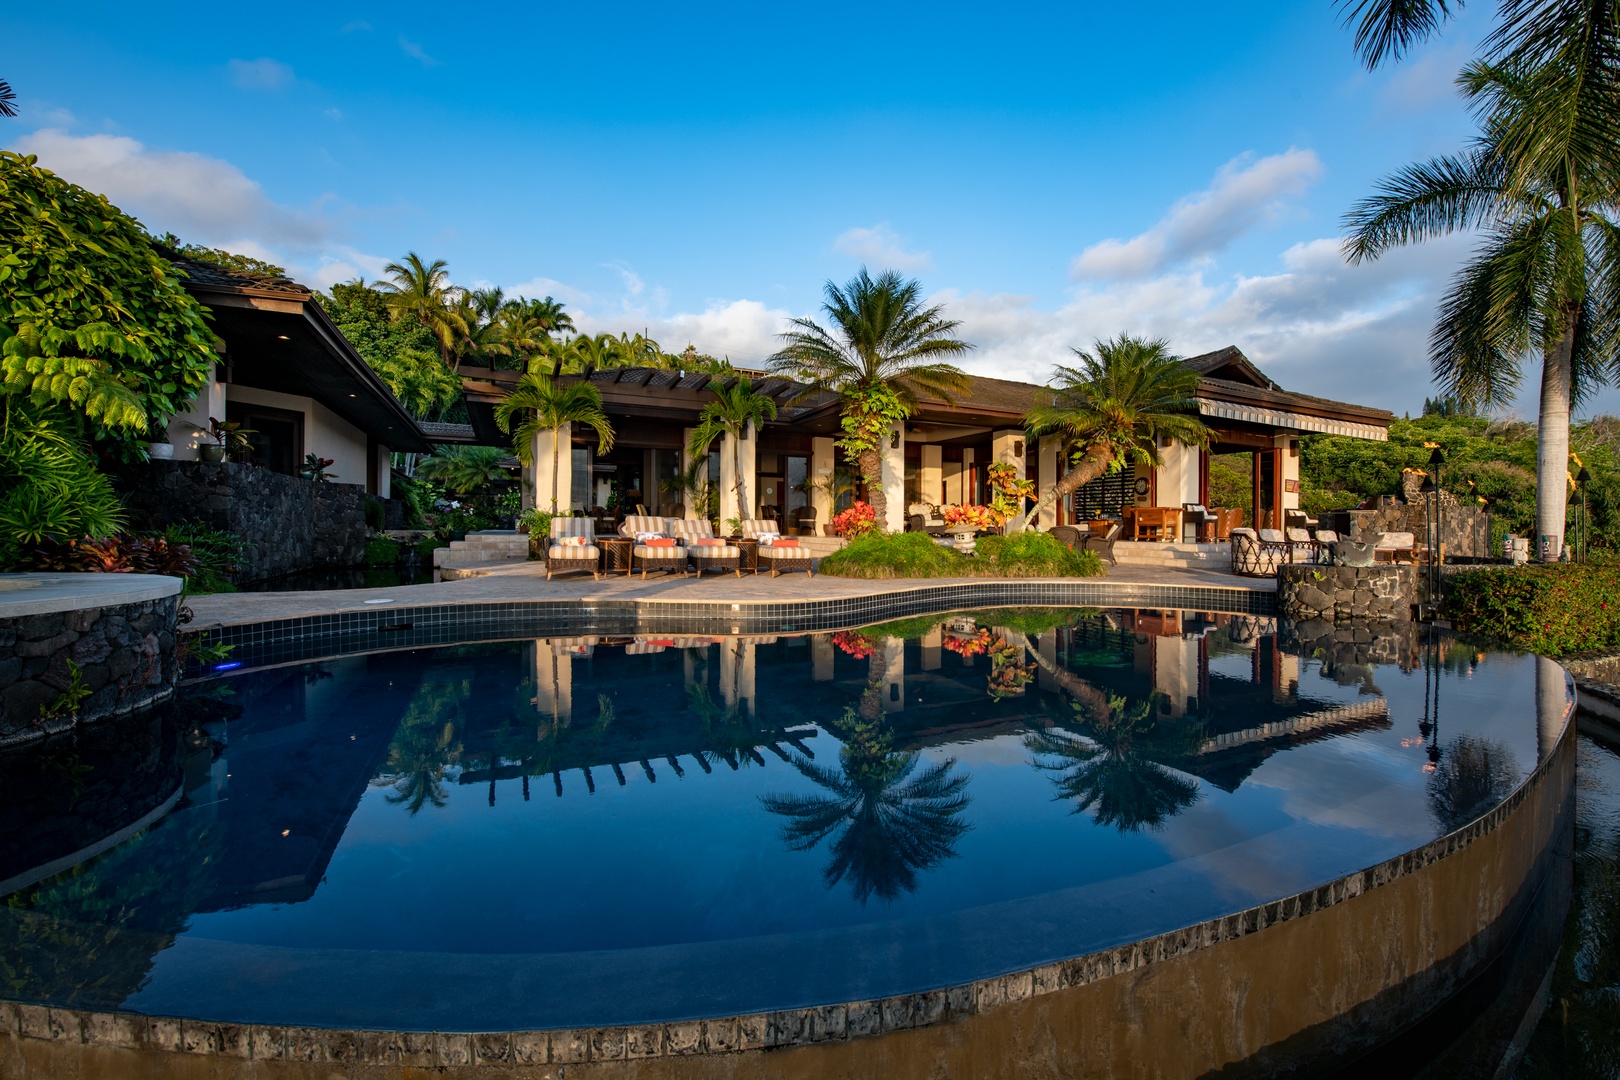 Kailua Kona Vacation Rentals, Hale Wailele** - Custom built infinity pool and spa with views